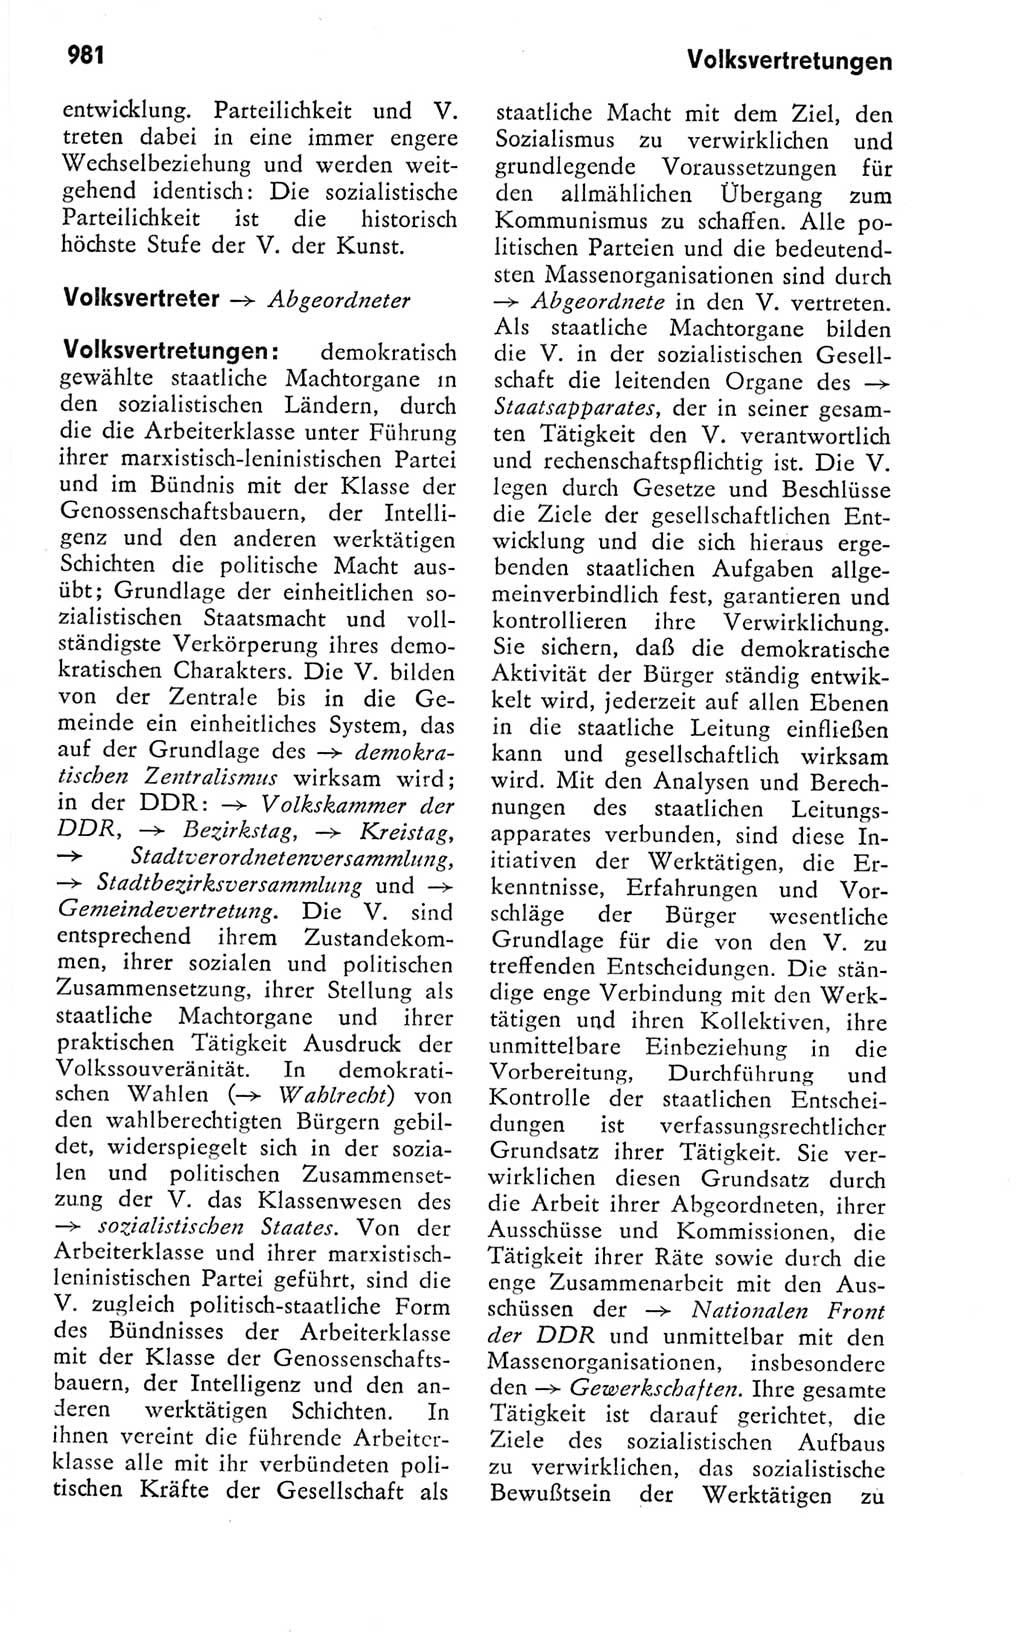 Kleines politisches Wörterbuch [Deutsche Demokratische Republik (DDR)] 1978, Seite 981 (Kl. pol. Wb. DDR 1978, S. 981)